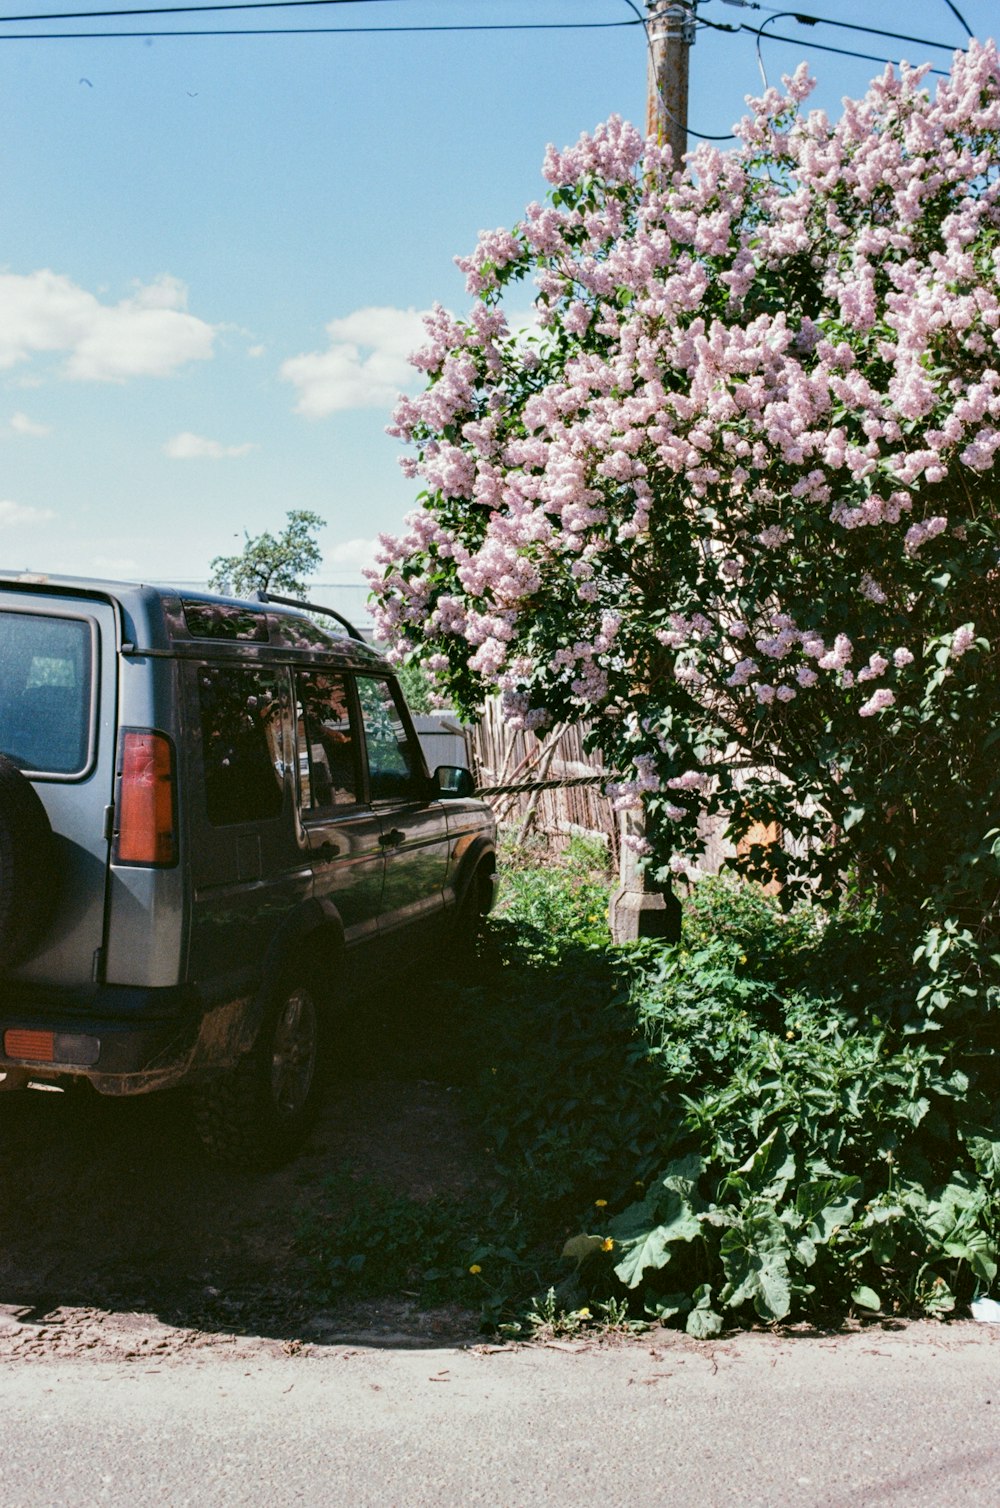 Un coche aparcado junto a un arbusto con flores moradas